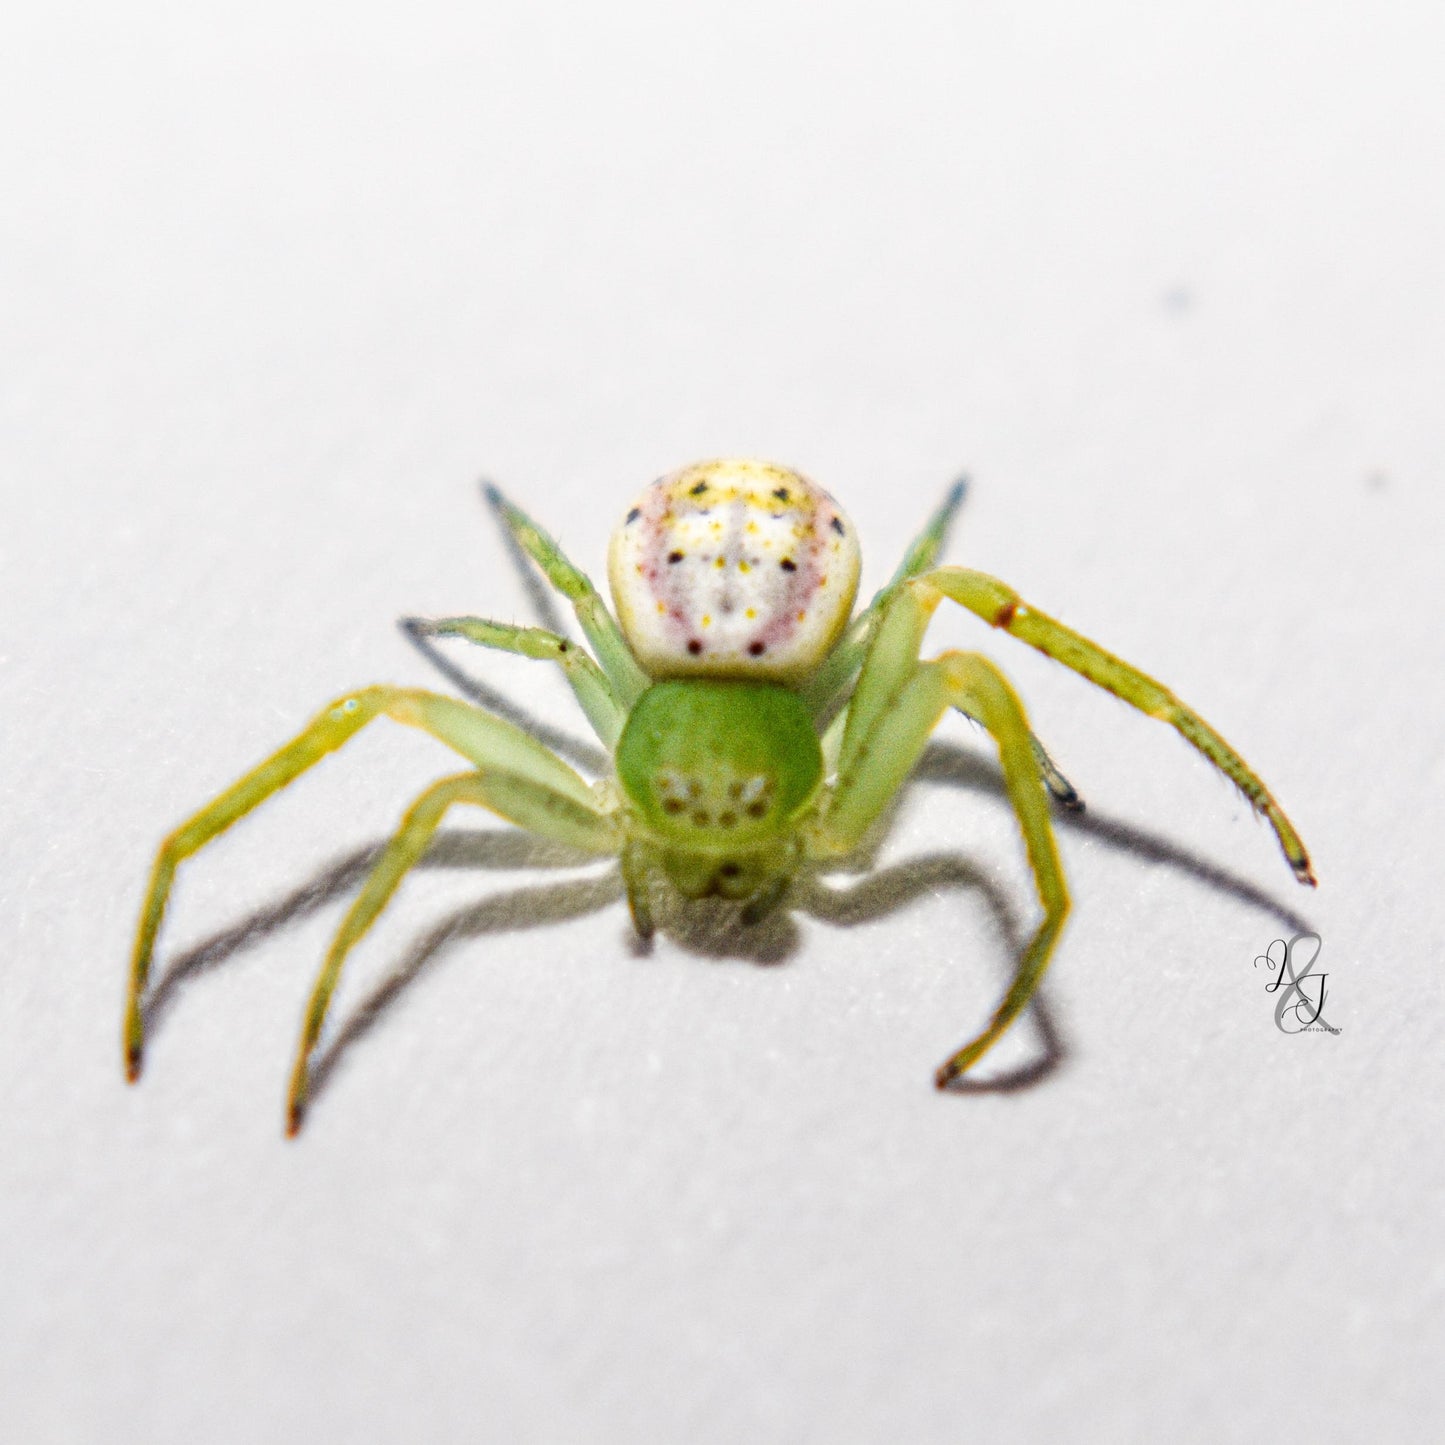 Flower Crab Spider (Tharrhalea sp.)